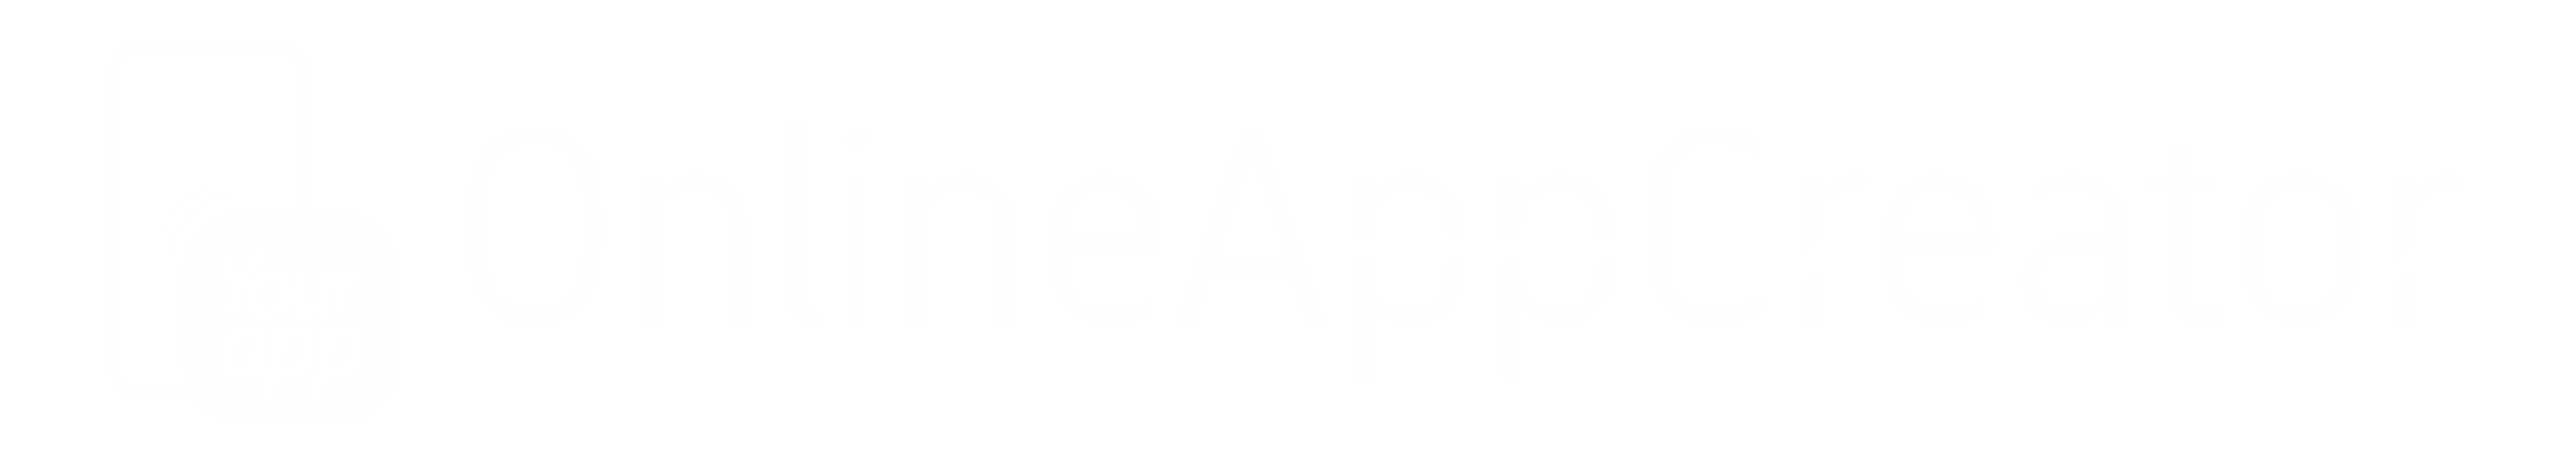 OnlineAppCreator Logo